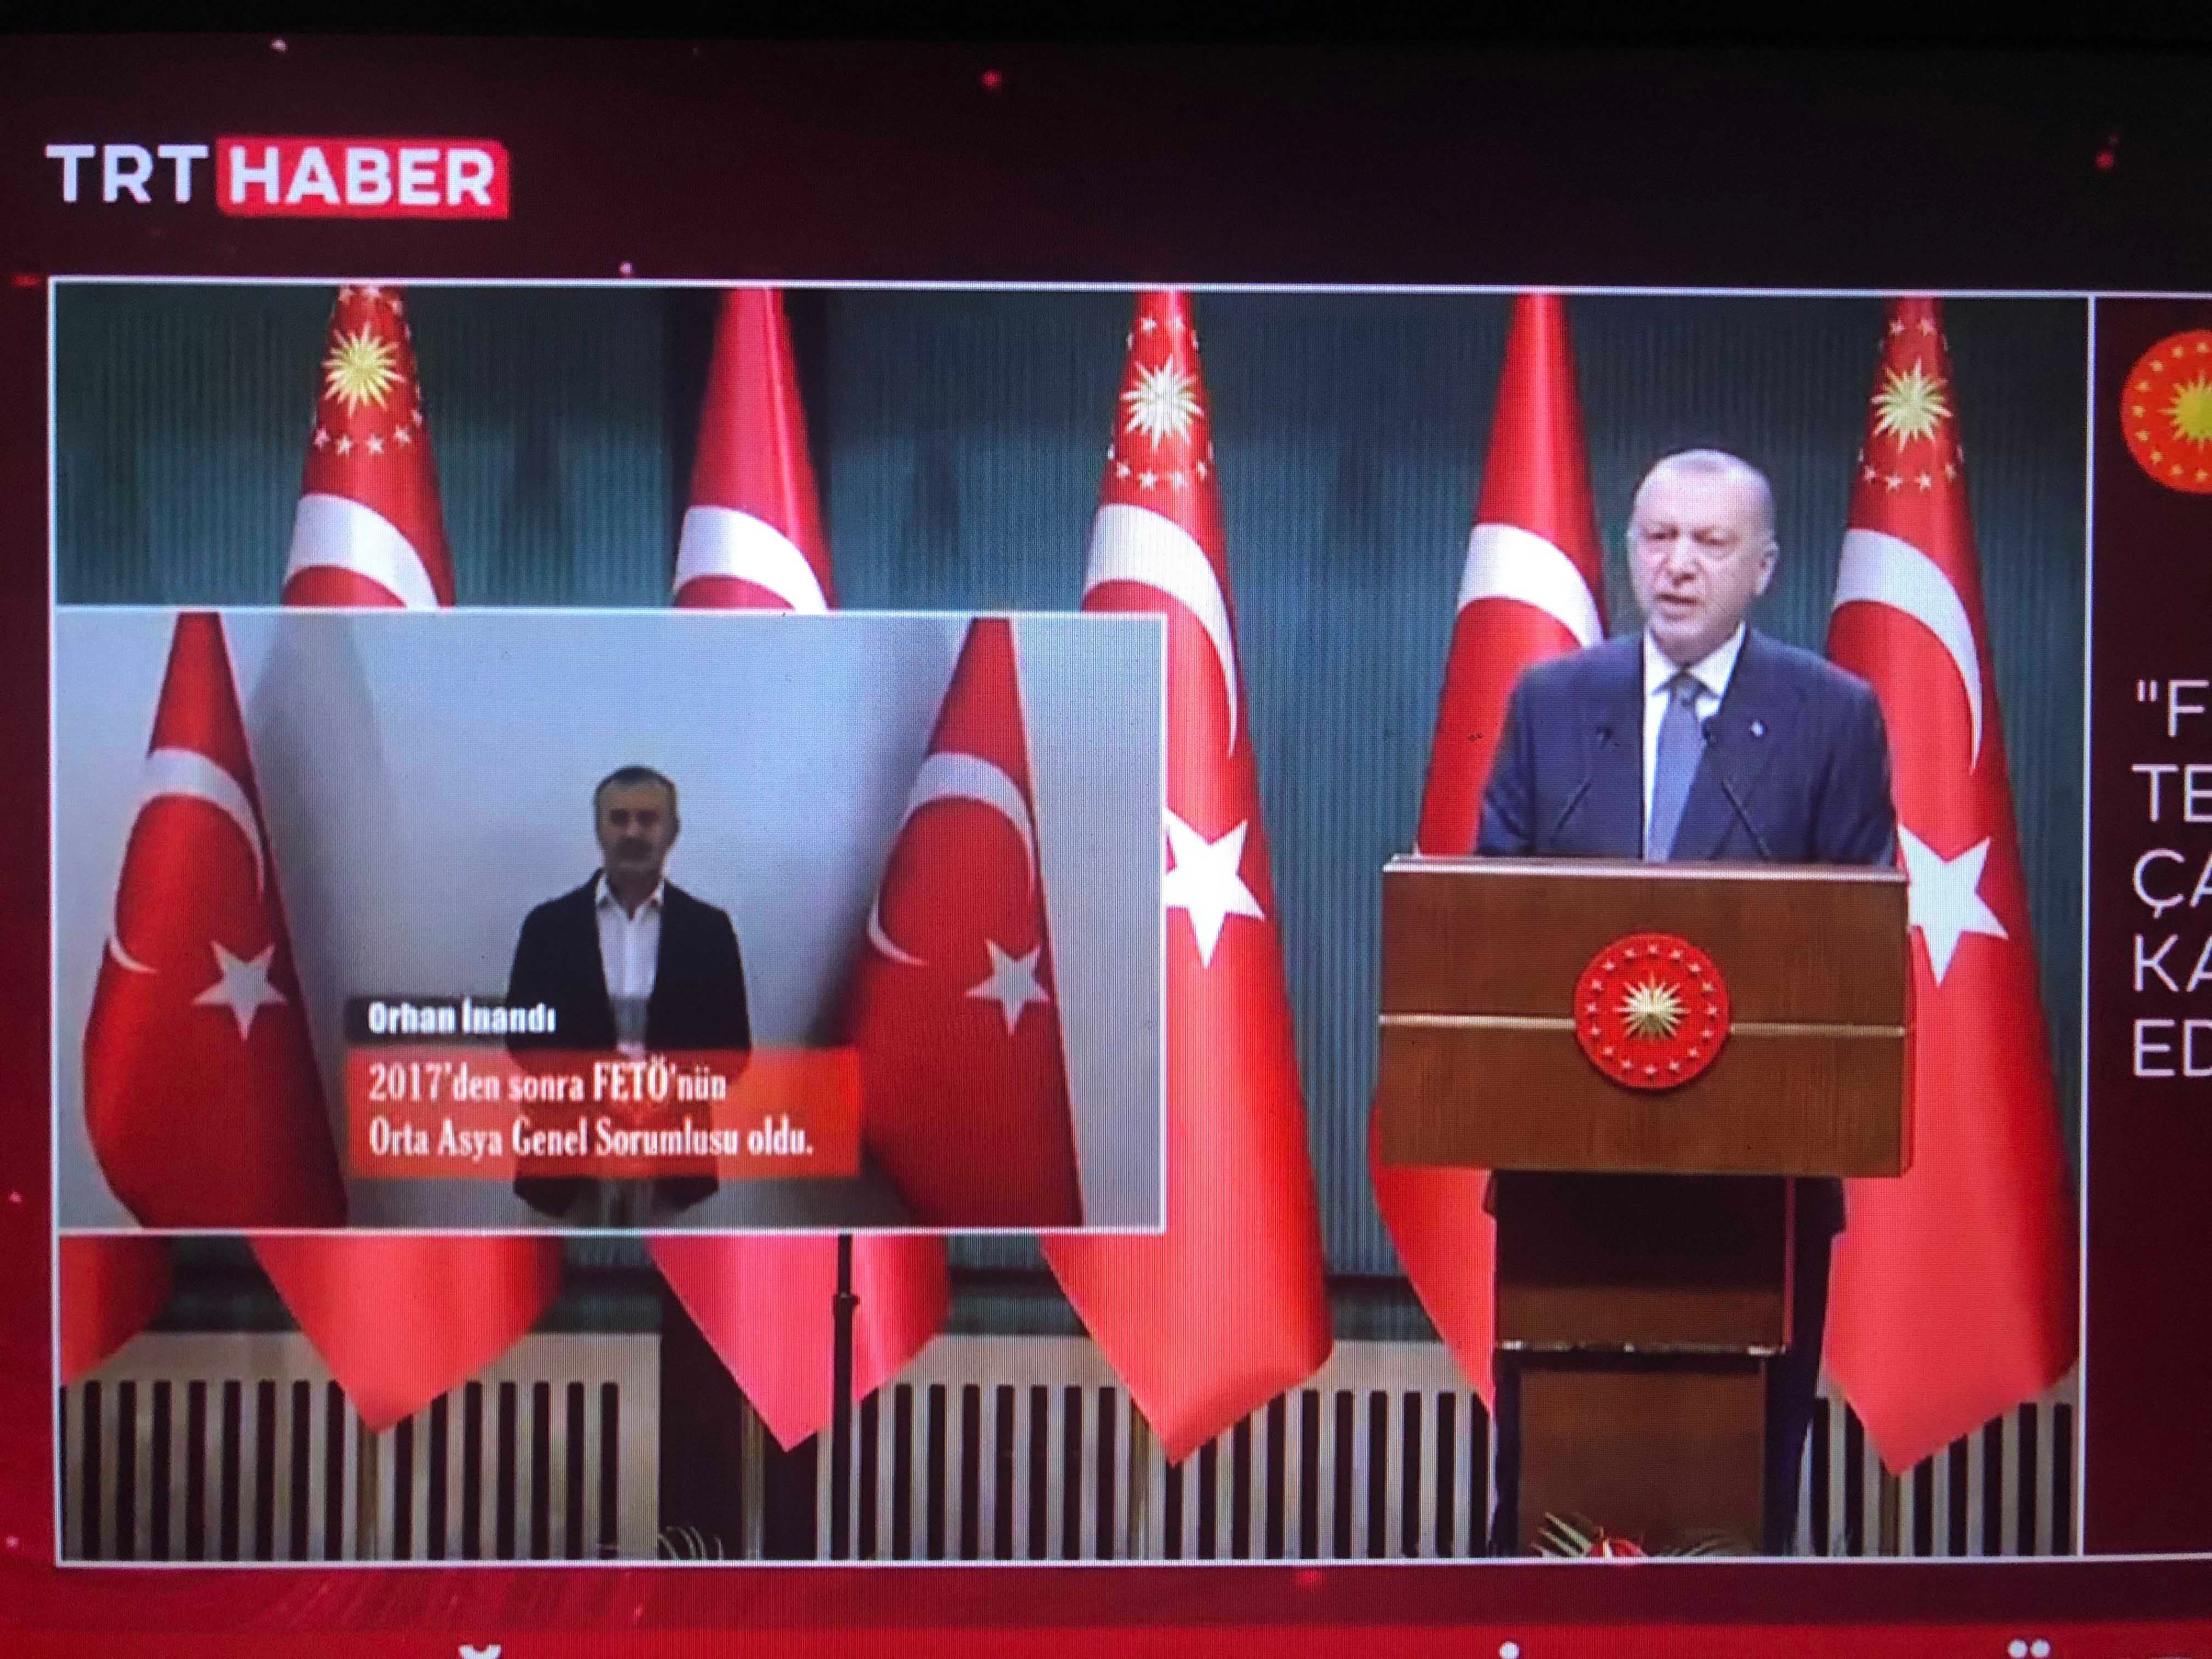 Скриншот передачи на TRT TV 5 июля 2021 г., на которой президент Турции Реджеп Тайип Эрдоган объявил, что спецслужбы перевезли Орхана Инанды из Кыргызстана в Турцию.